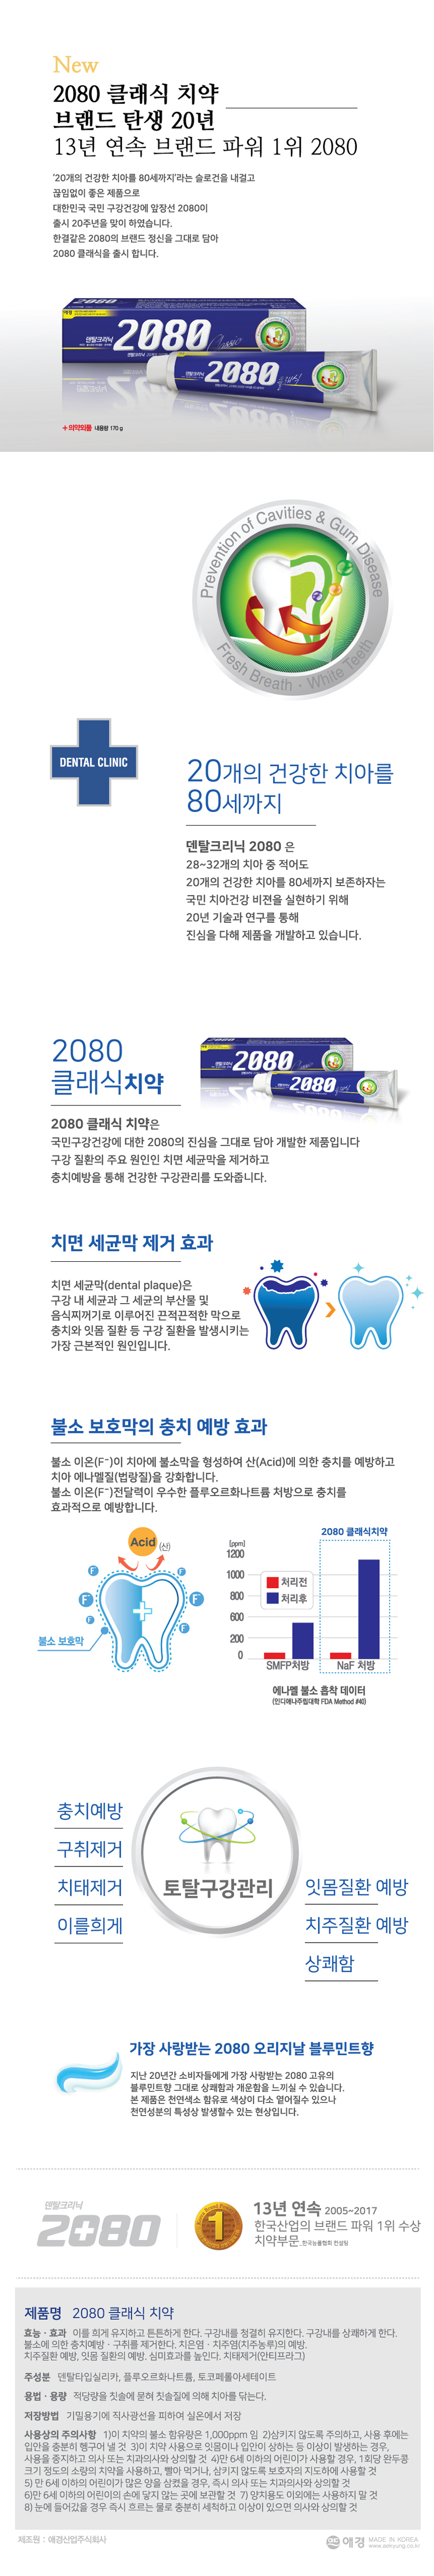 de_classic_toothpaste.jpg